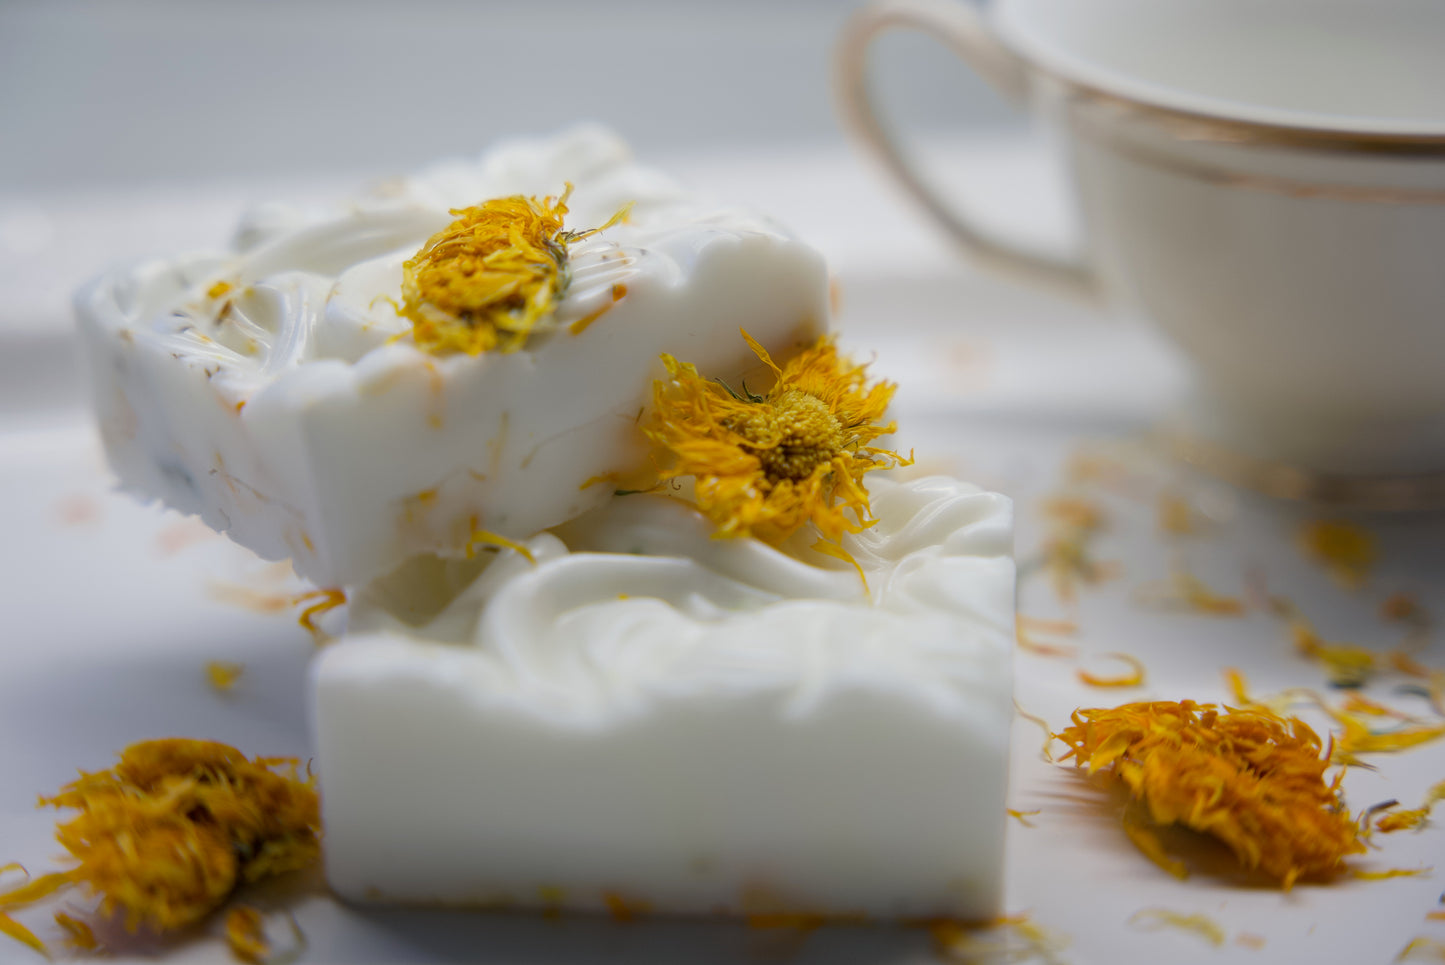 Homemade Peace & Calming Organic Shea butter body soap